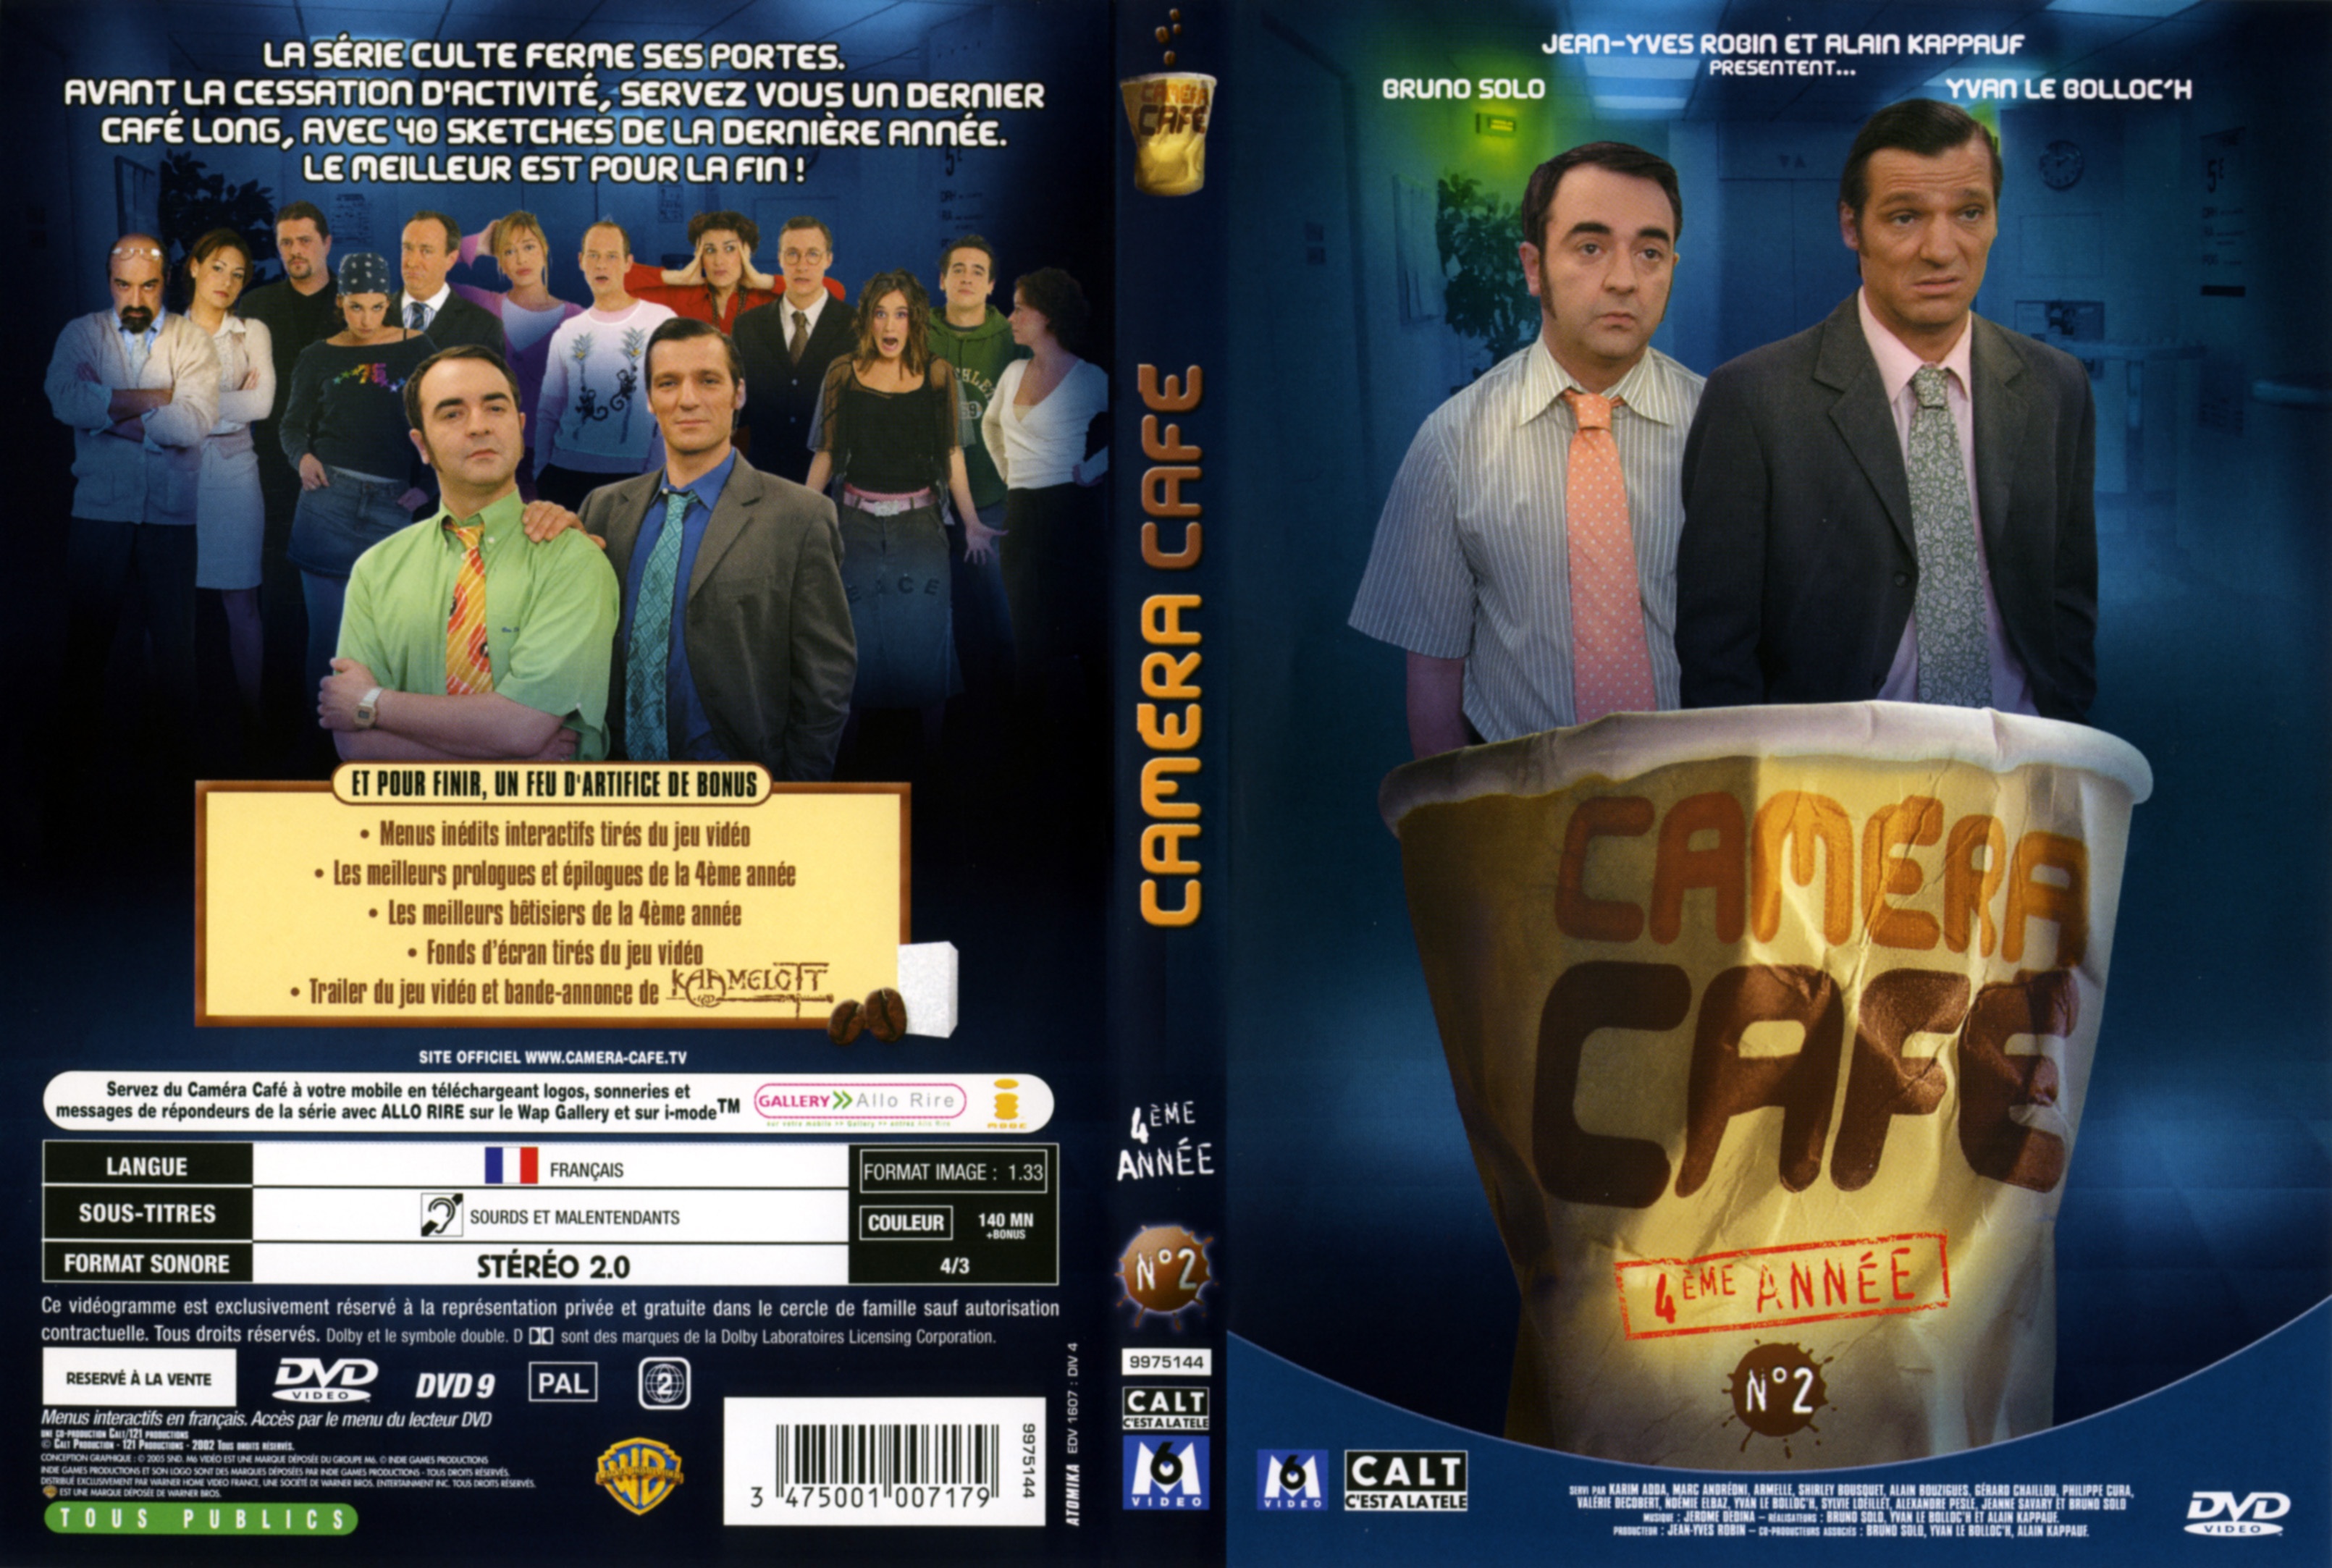 Jaquette DVD Camra caf Saison 4 vol 2